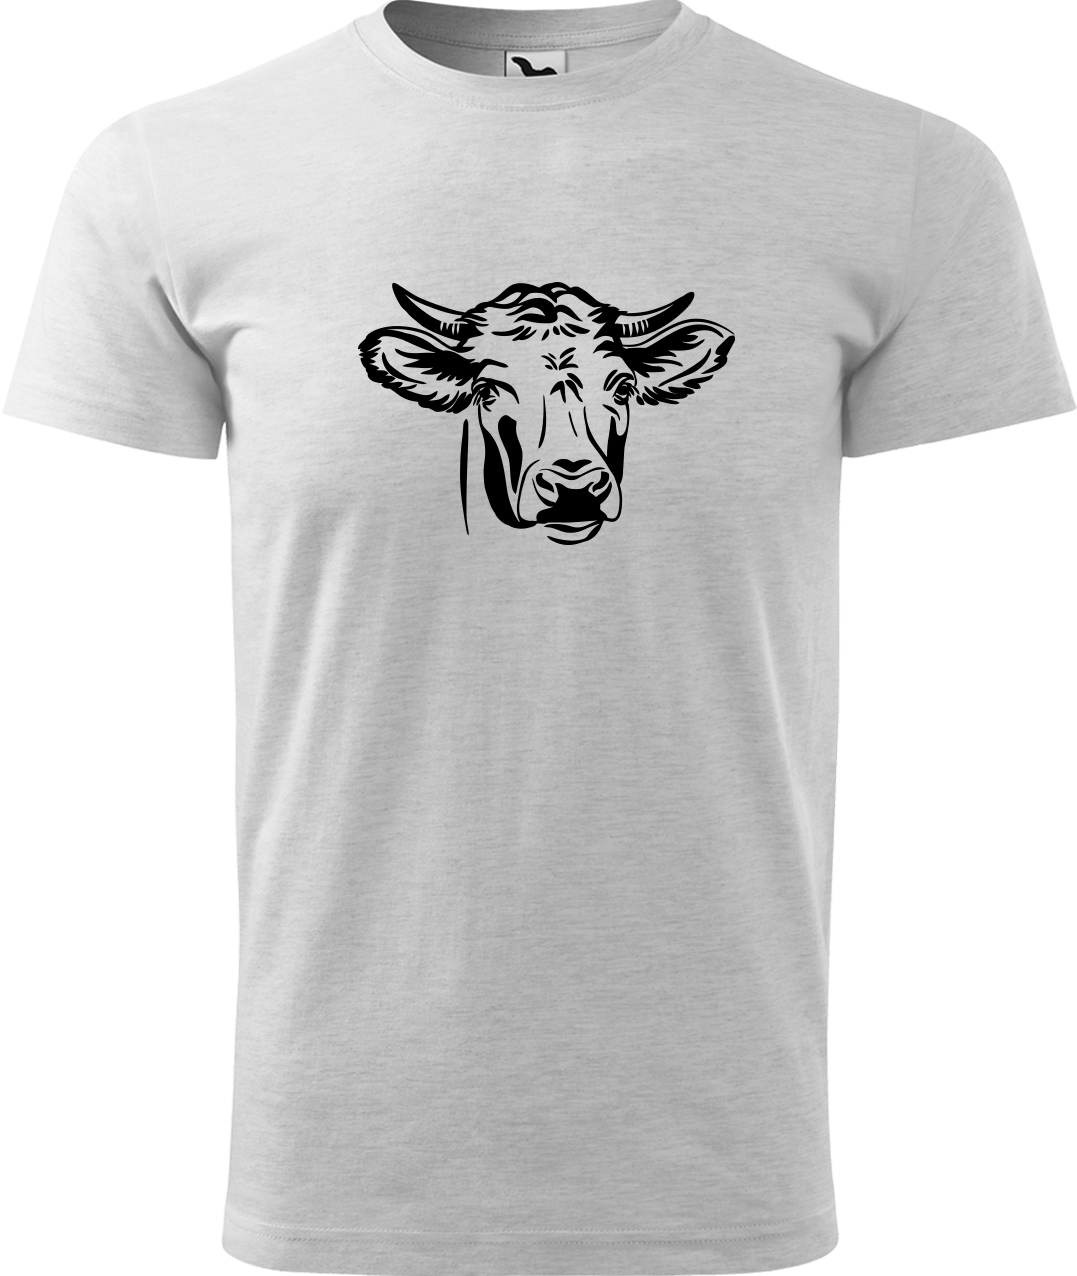 Pánské tričko s krávou - Hlava krávy Velikost: L, Barva: Světle šedý melír (03), Střih: pánský